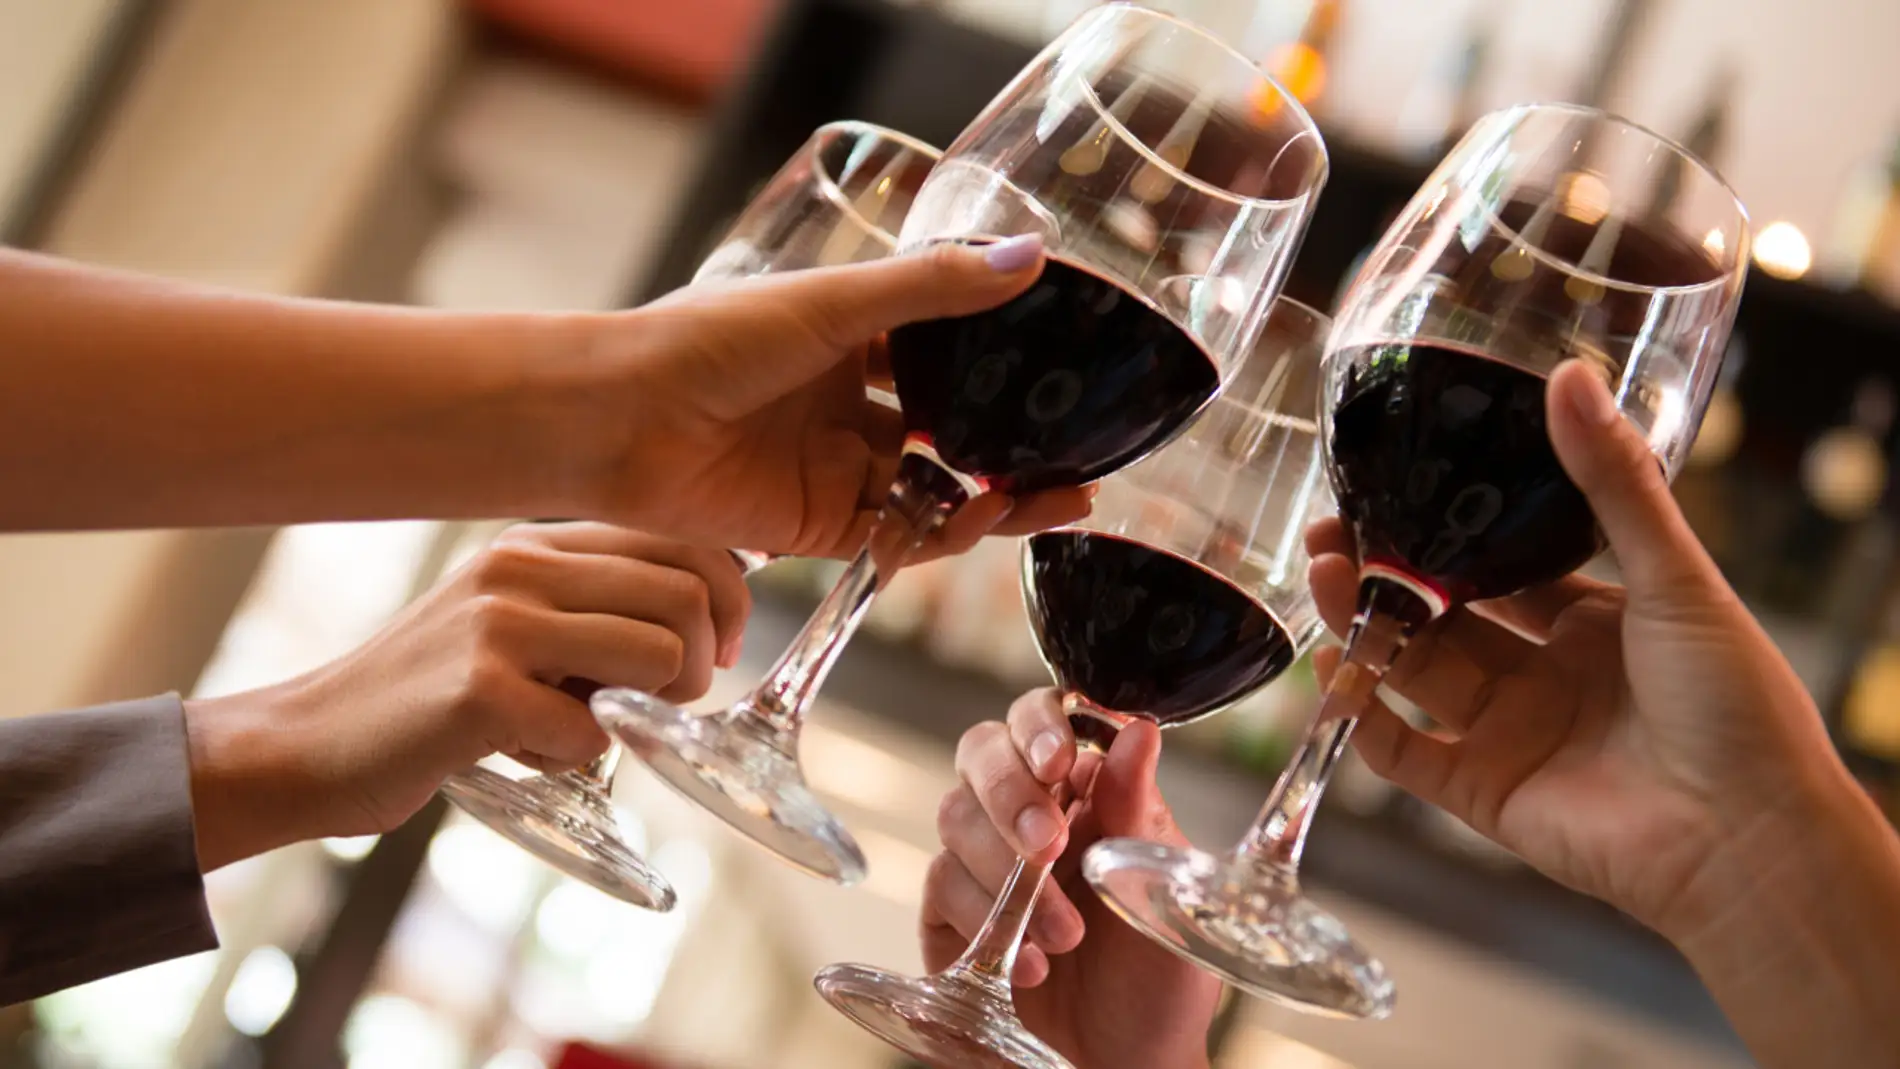 La Palma del Condado hermana este fin de semana los vinos de Huelva y Madrid